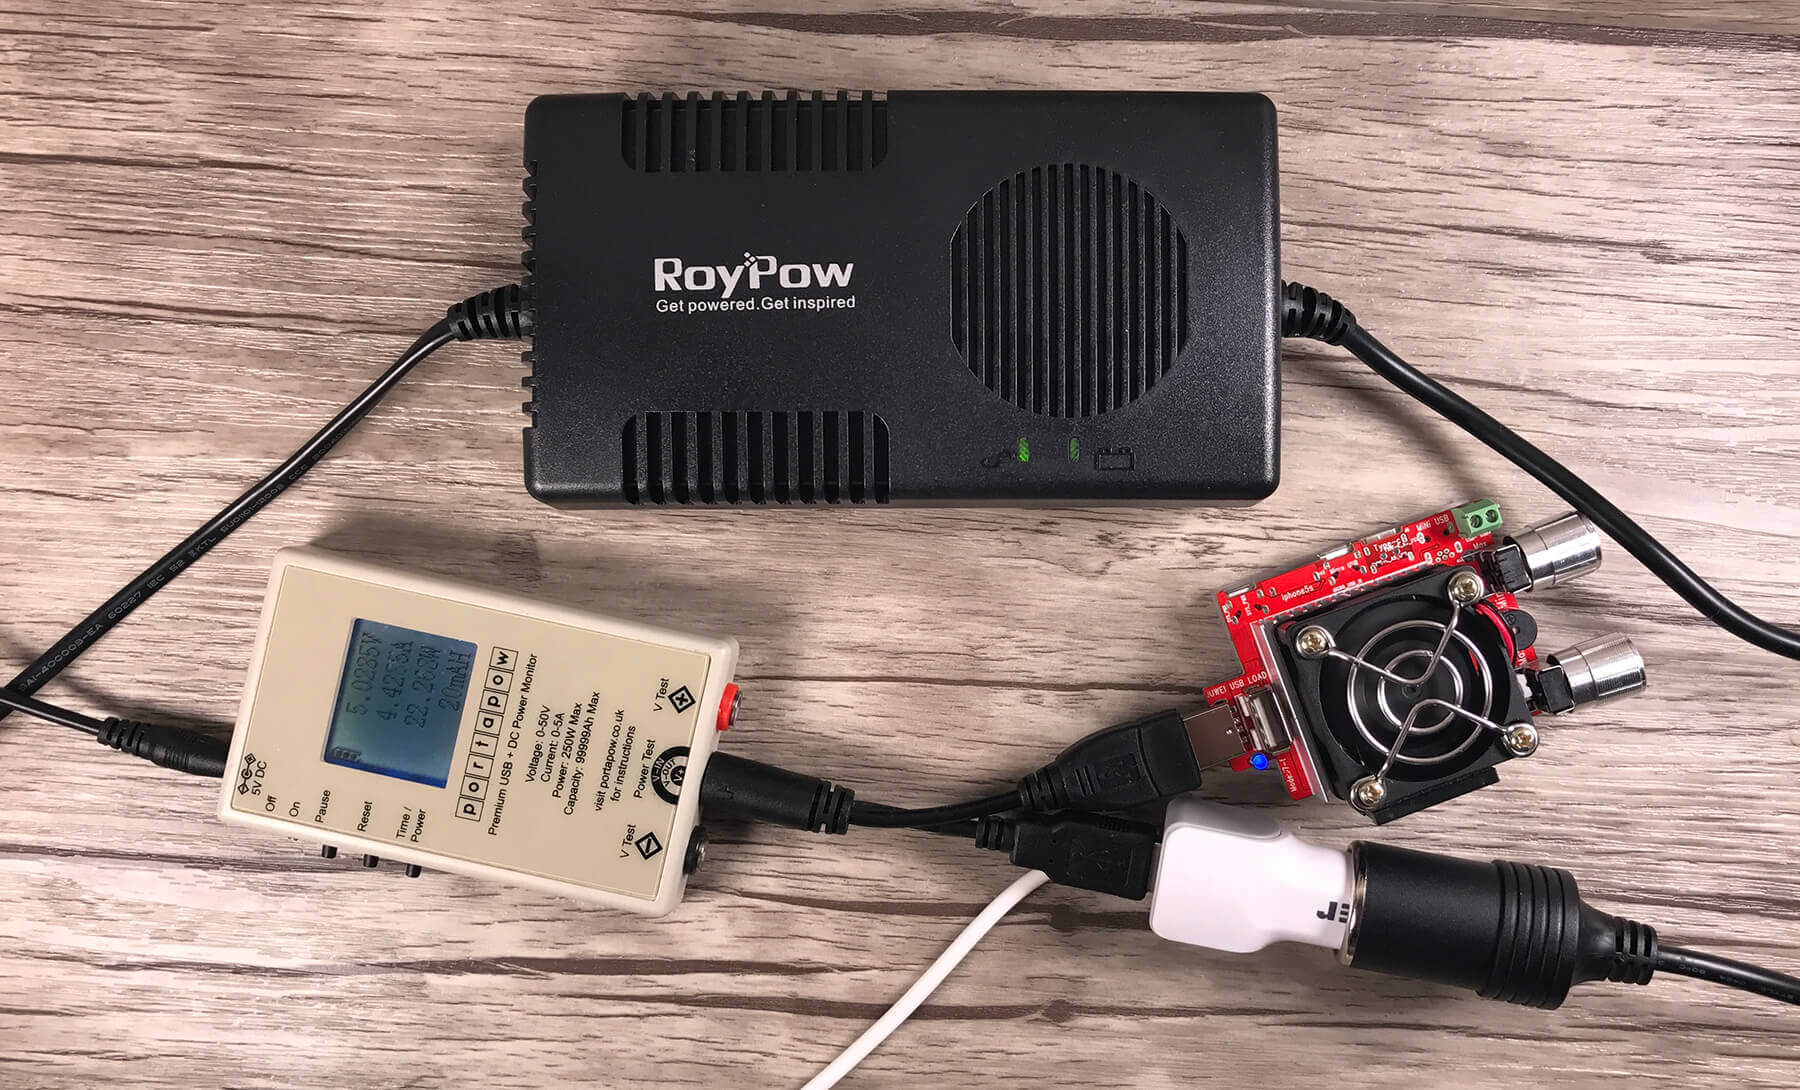 Mein Testaufbau: RoyPow Spannungswandler, USB-Multimeter, USB-Lastwiderstand und ein KFZ-USB-Ladegerät.